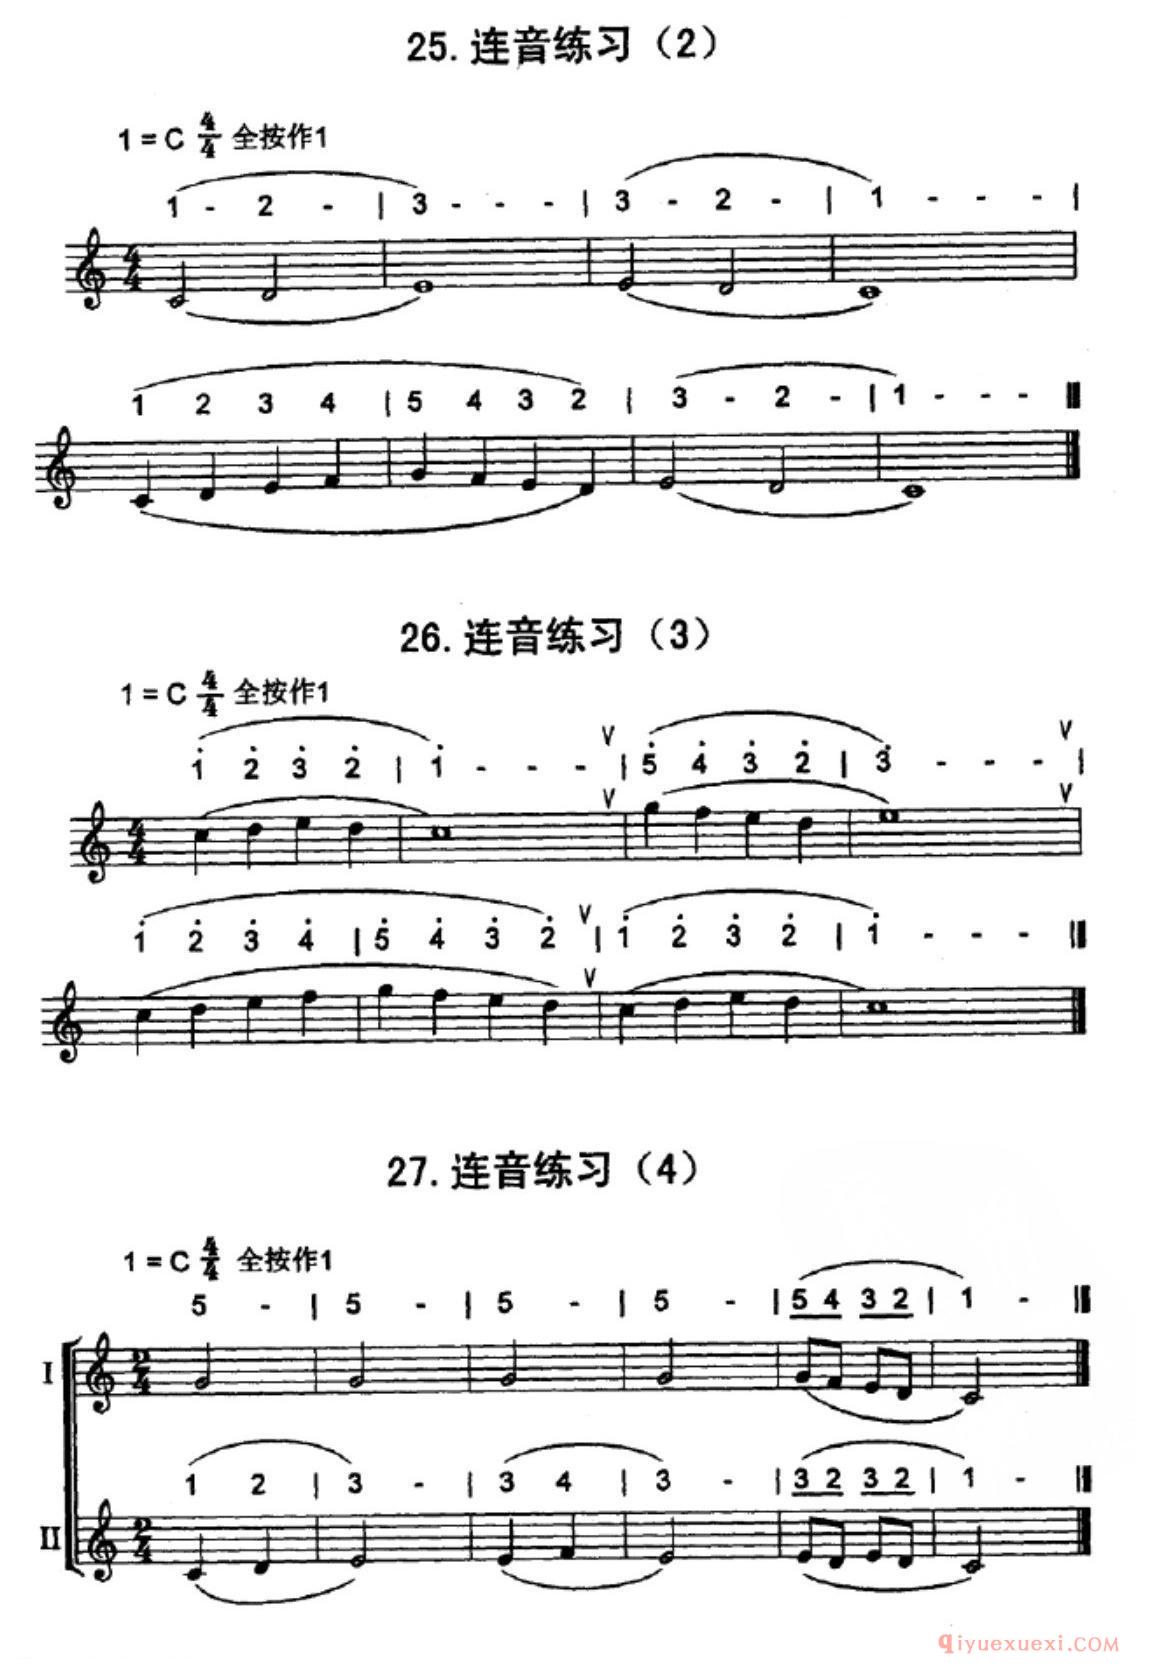 竖笛连音练习曲几首_五线谱与简谱对照